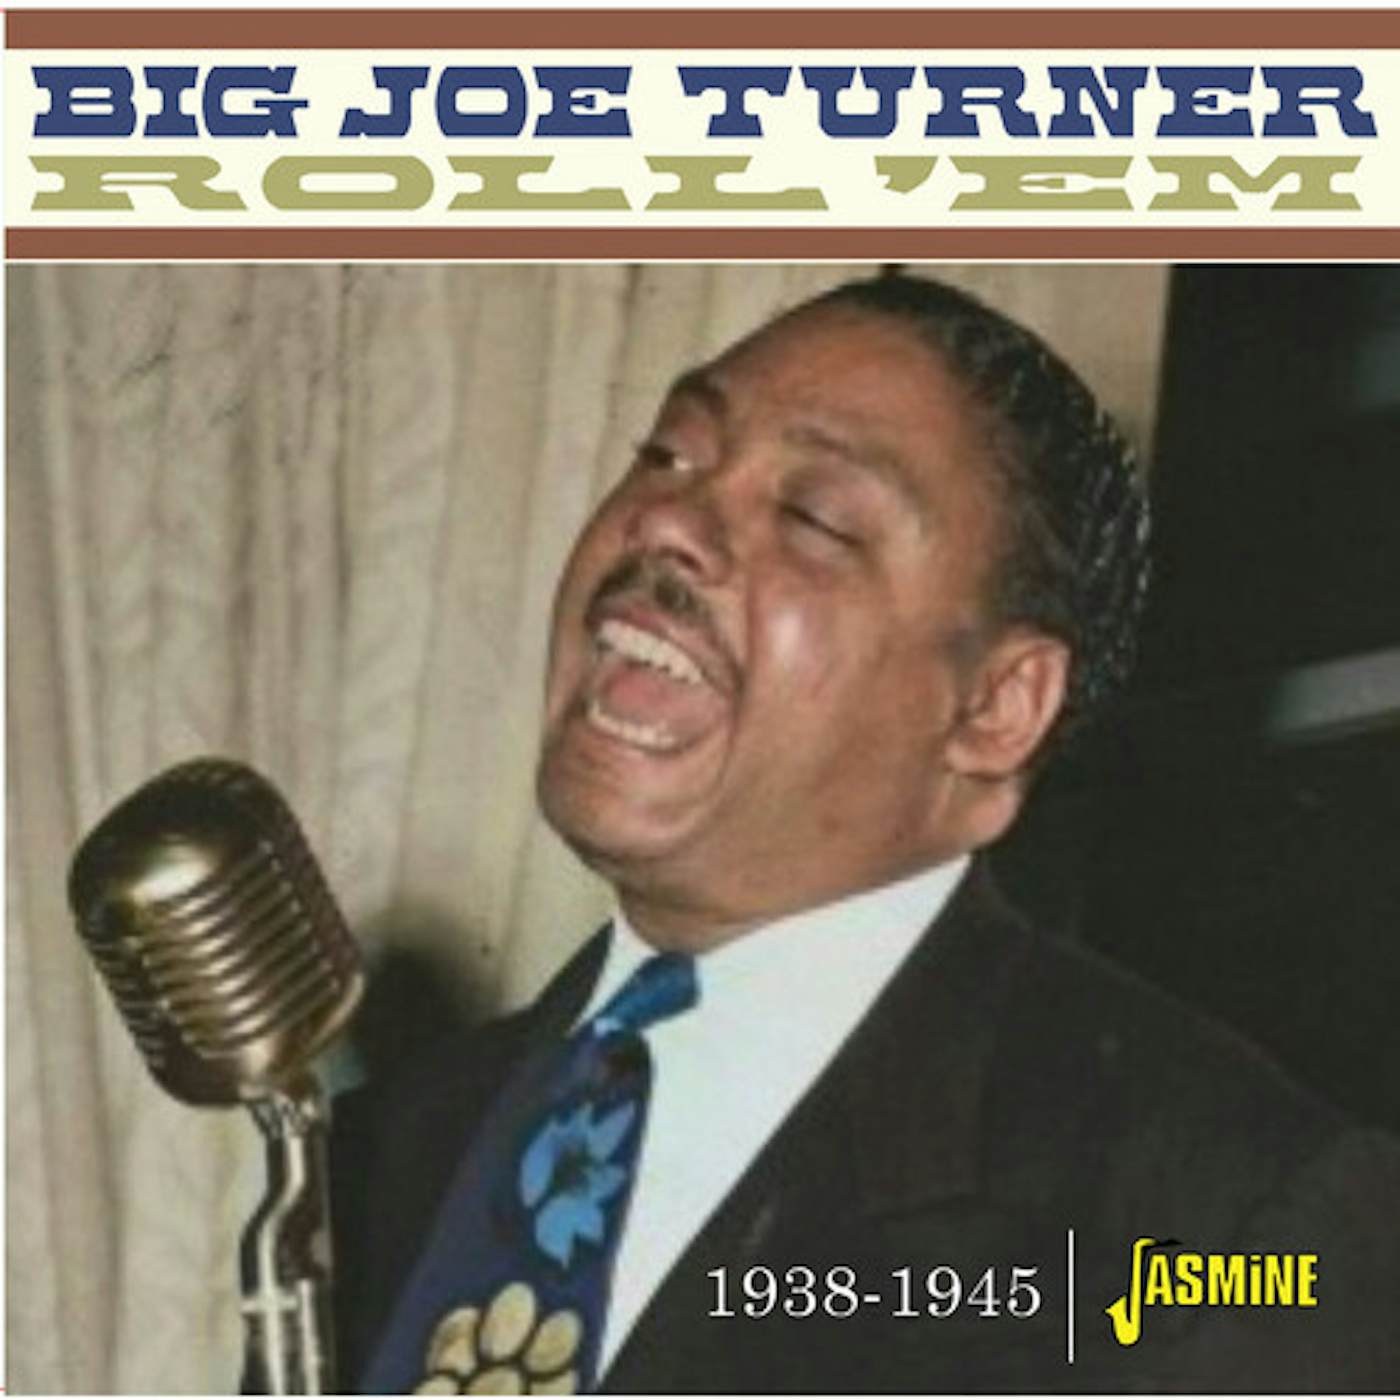 Big Joe Turner ROLL EM 1938-1945 CD